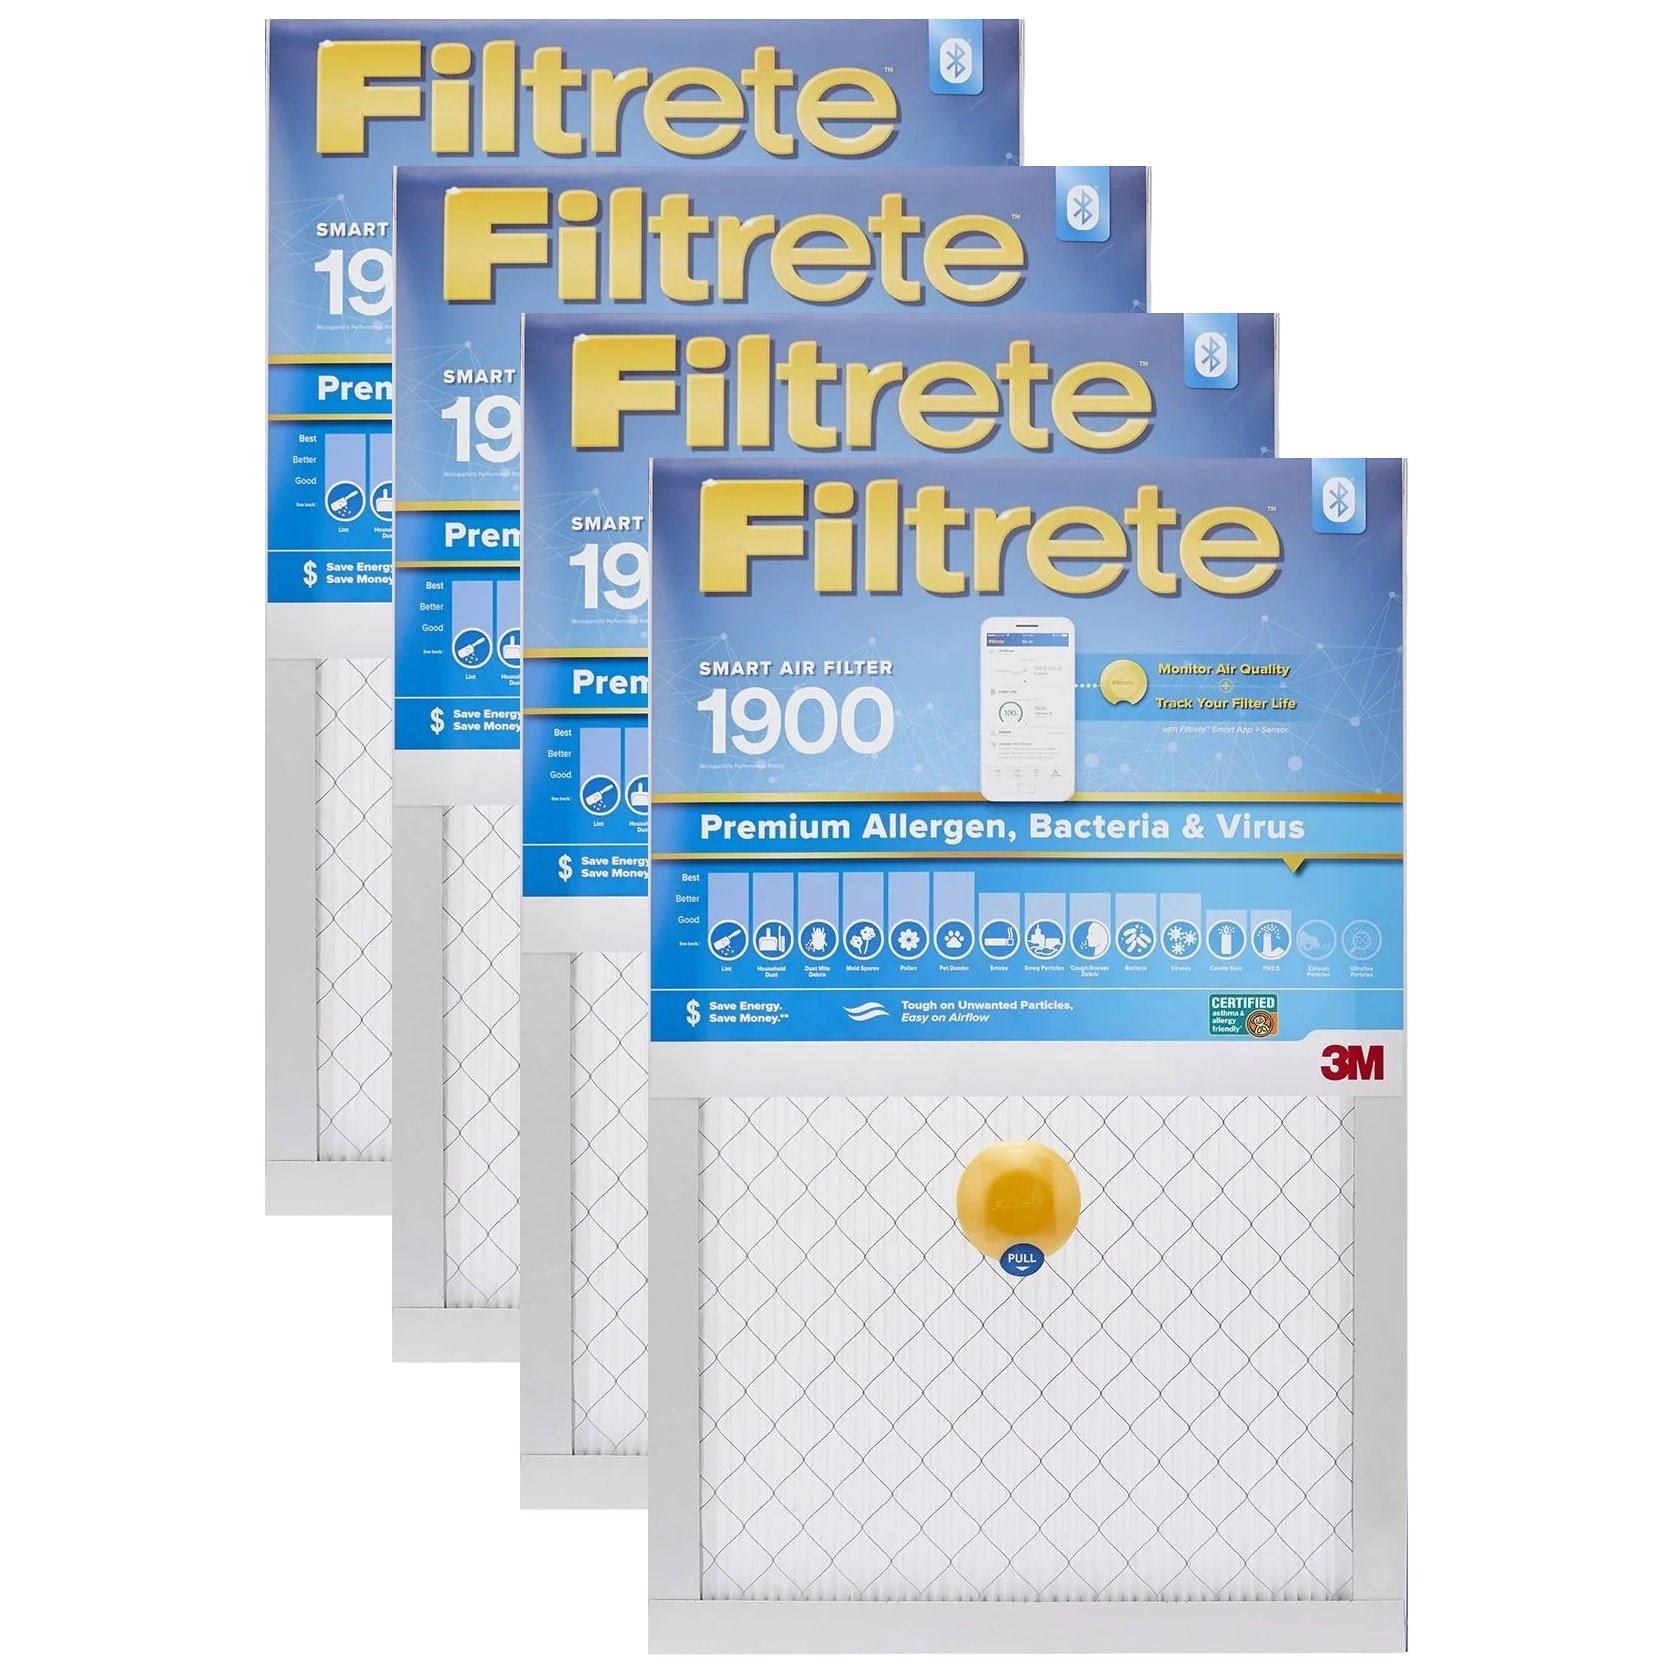 Filtrete Smart Air Filter S-UA02-4 20"x20"x1", 1900 MPR 4-Pack